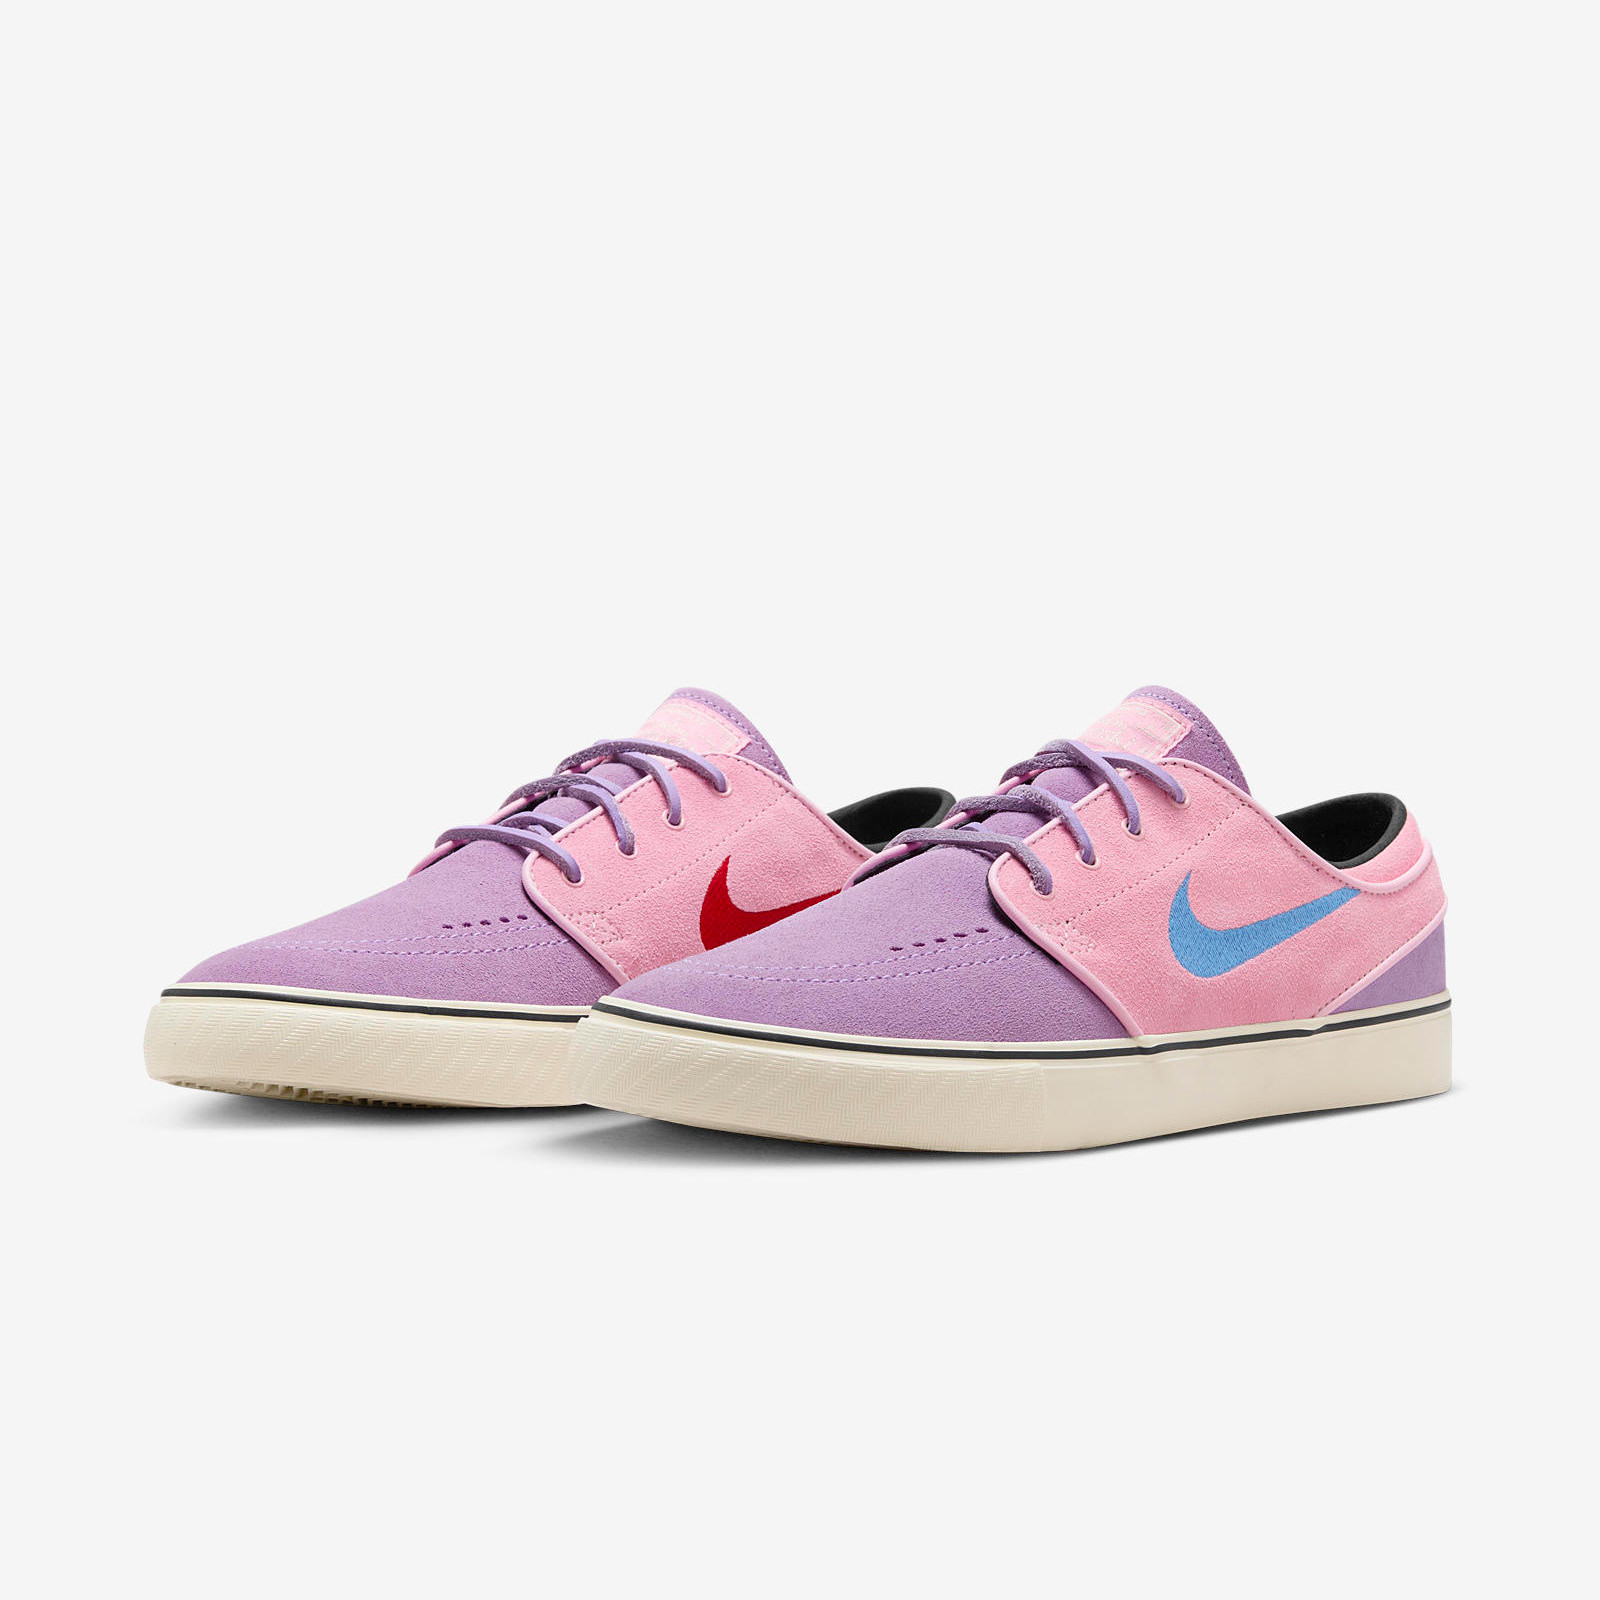 Nike SB Janoski+
Lilac / Pink